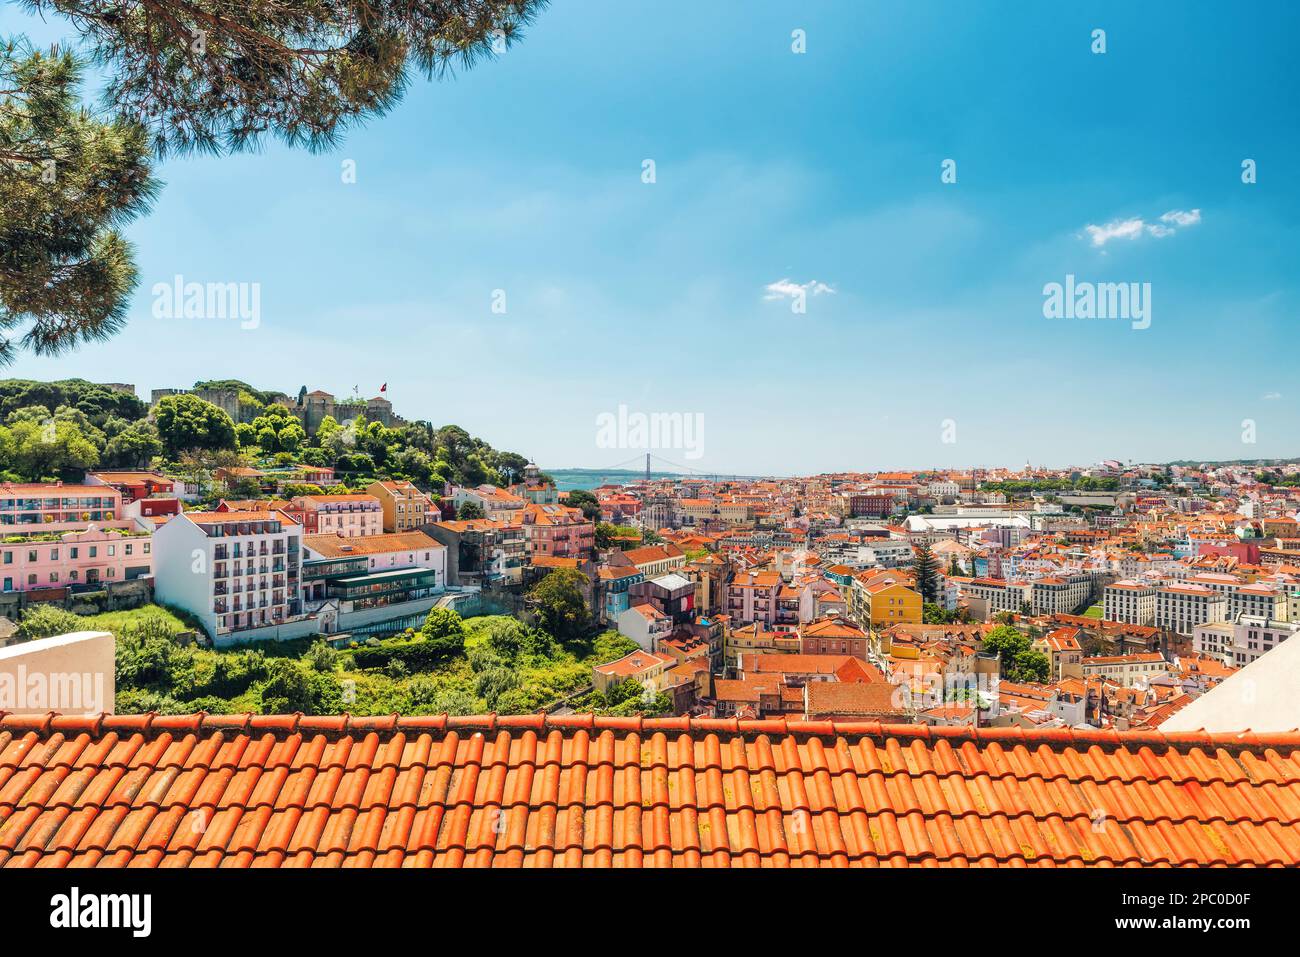 Skyline di Lisbona, Portogallo. Vista panoramica della città vecchia di Lisboa con tetti arancioni e il castello sulla collina. Destinazione del viaggio Foto Stock